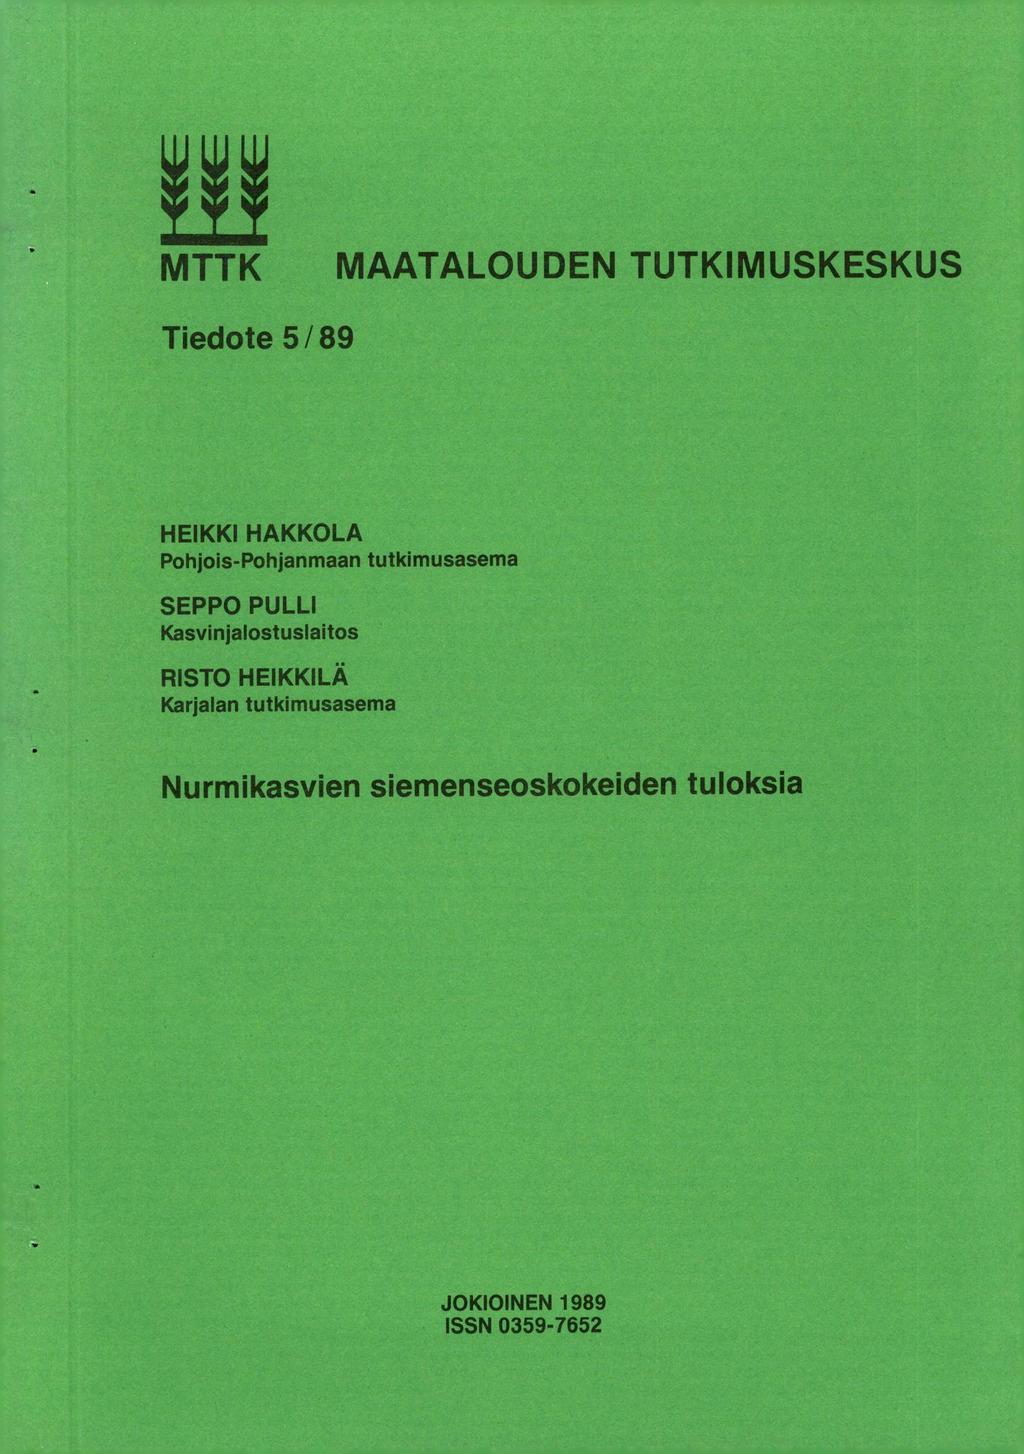 MTTK MAATALOUDEN TUTKIMUSKESKUS Tiedote 5/89 HEIKKI HAKKOLA Pohjois-Pohjanmaan tutkimusasema SEPPO PULLI